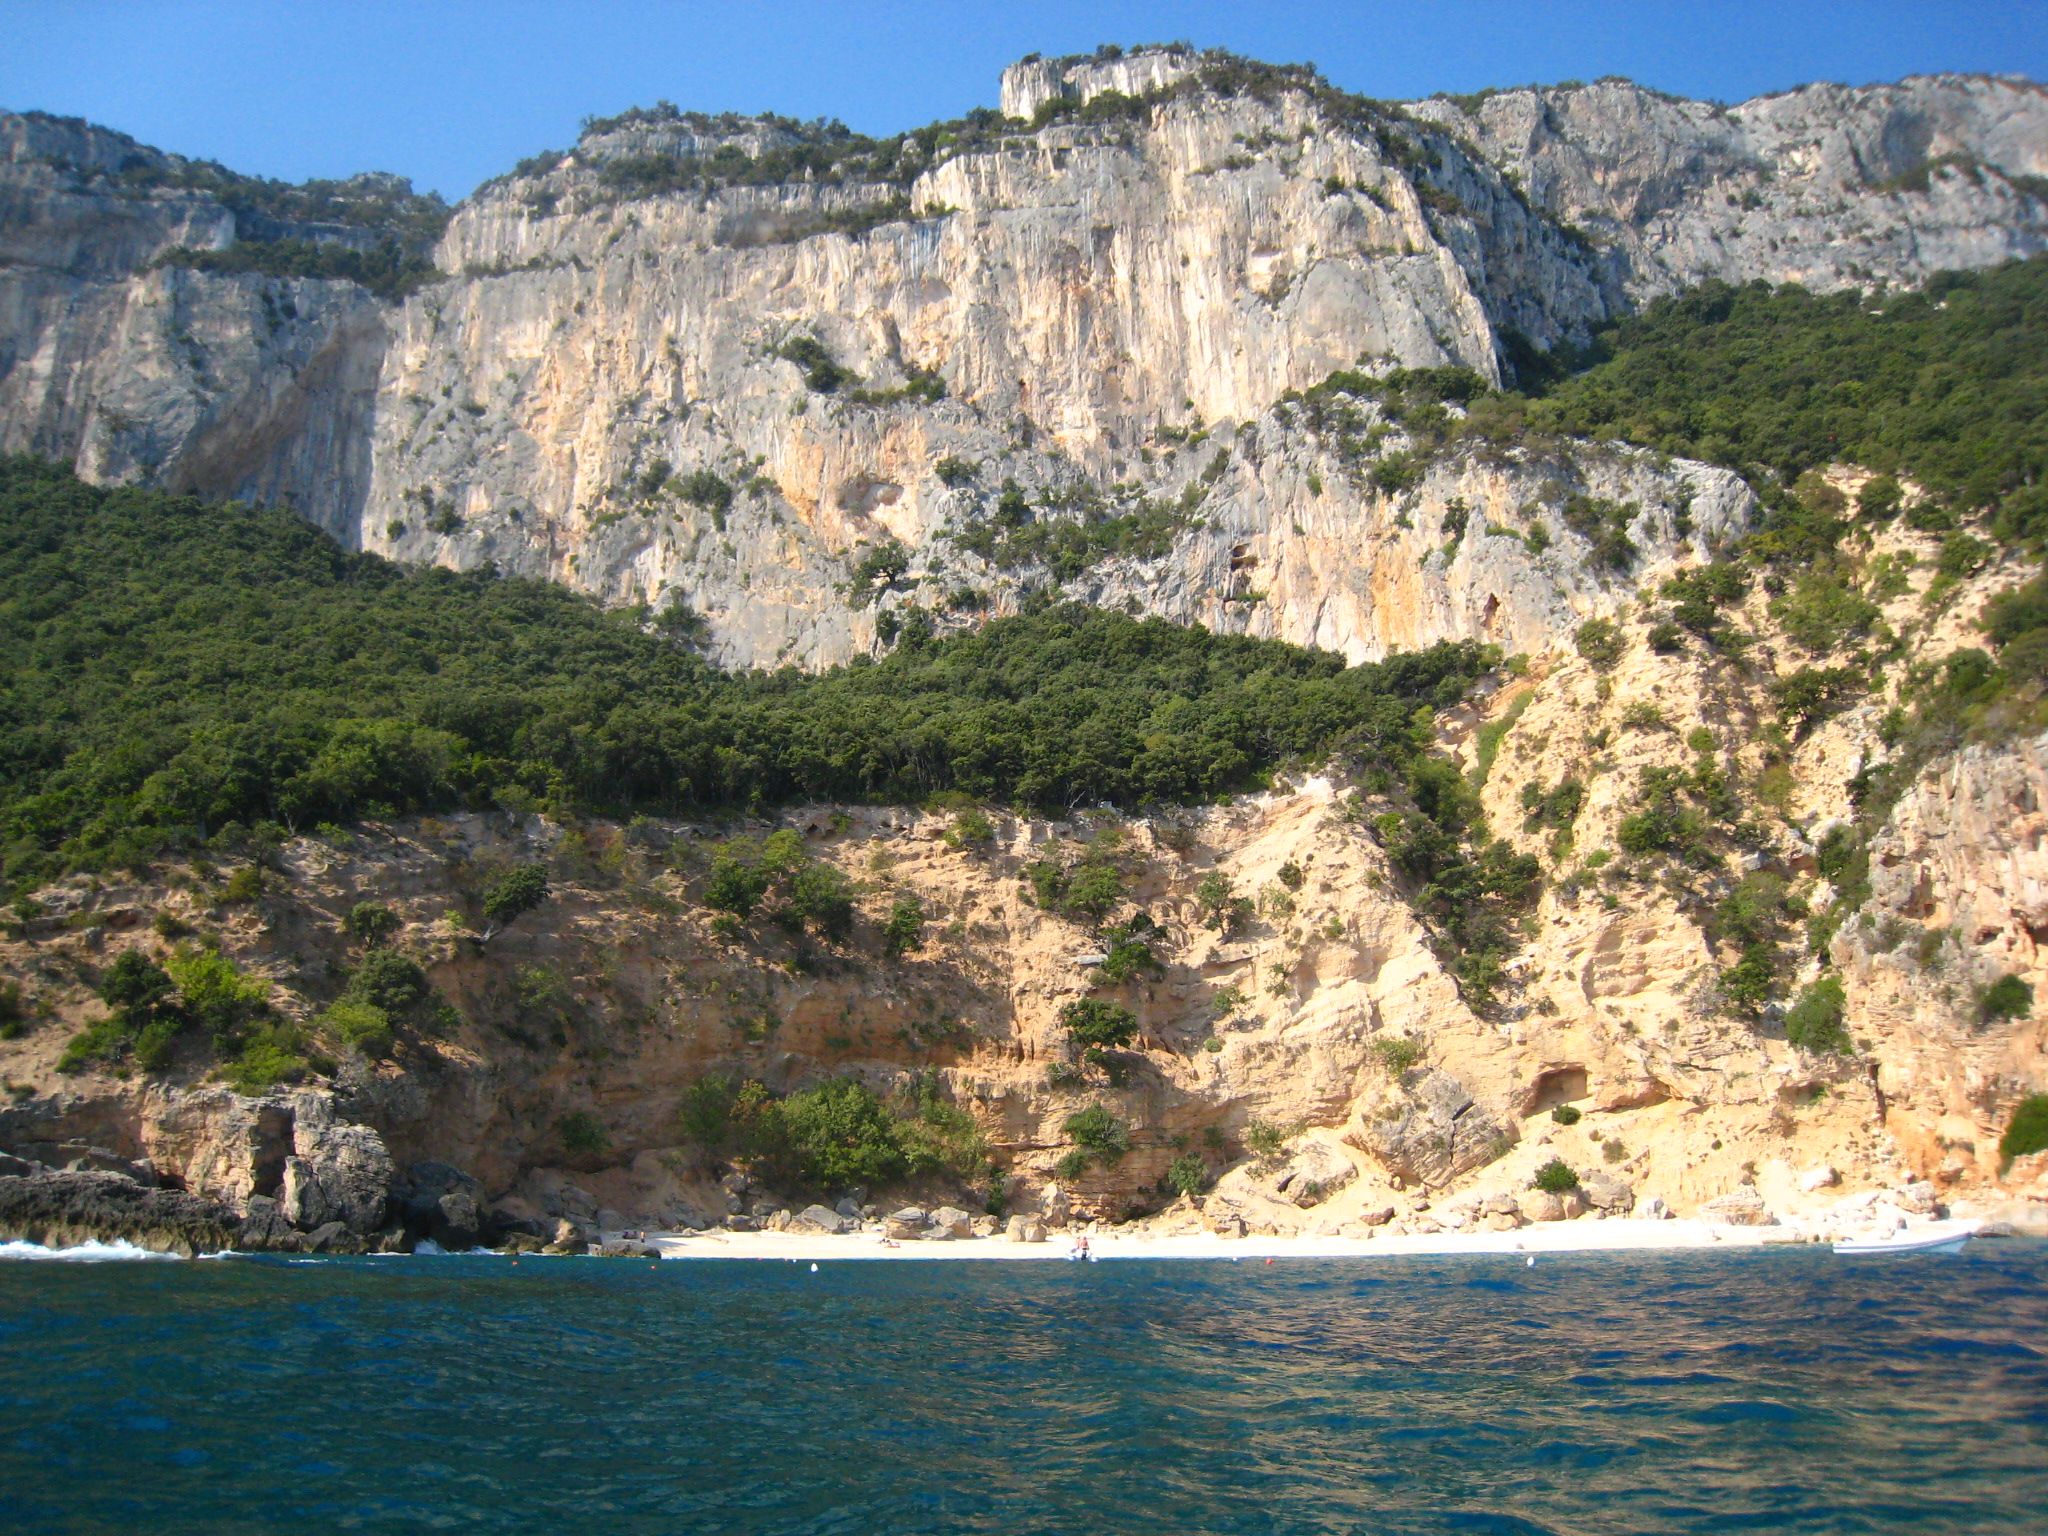 Sardinia beach surrounded by cliffs | Mediterranean | Pinterest ...